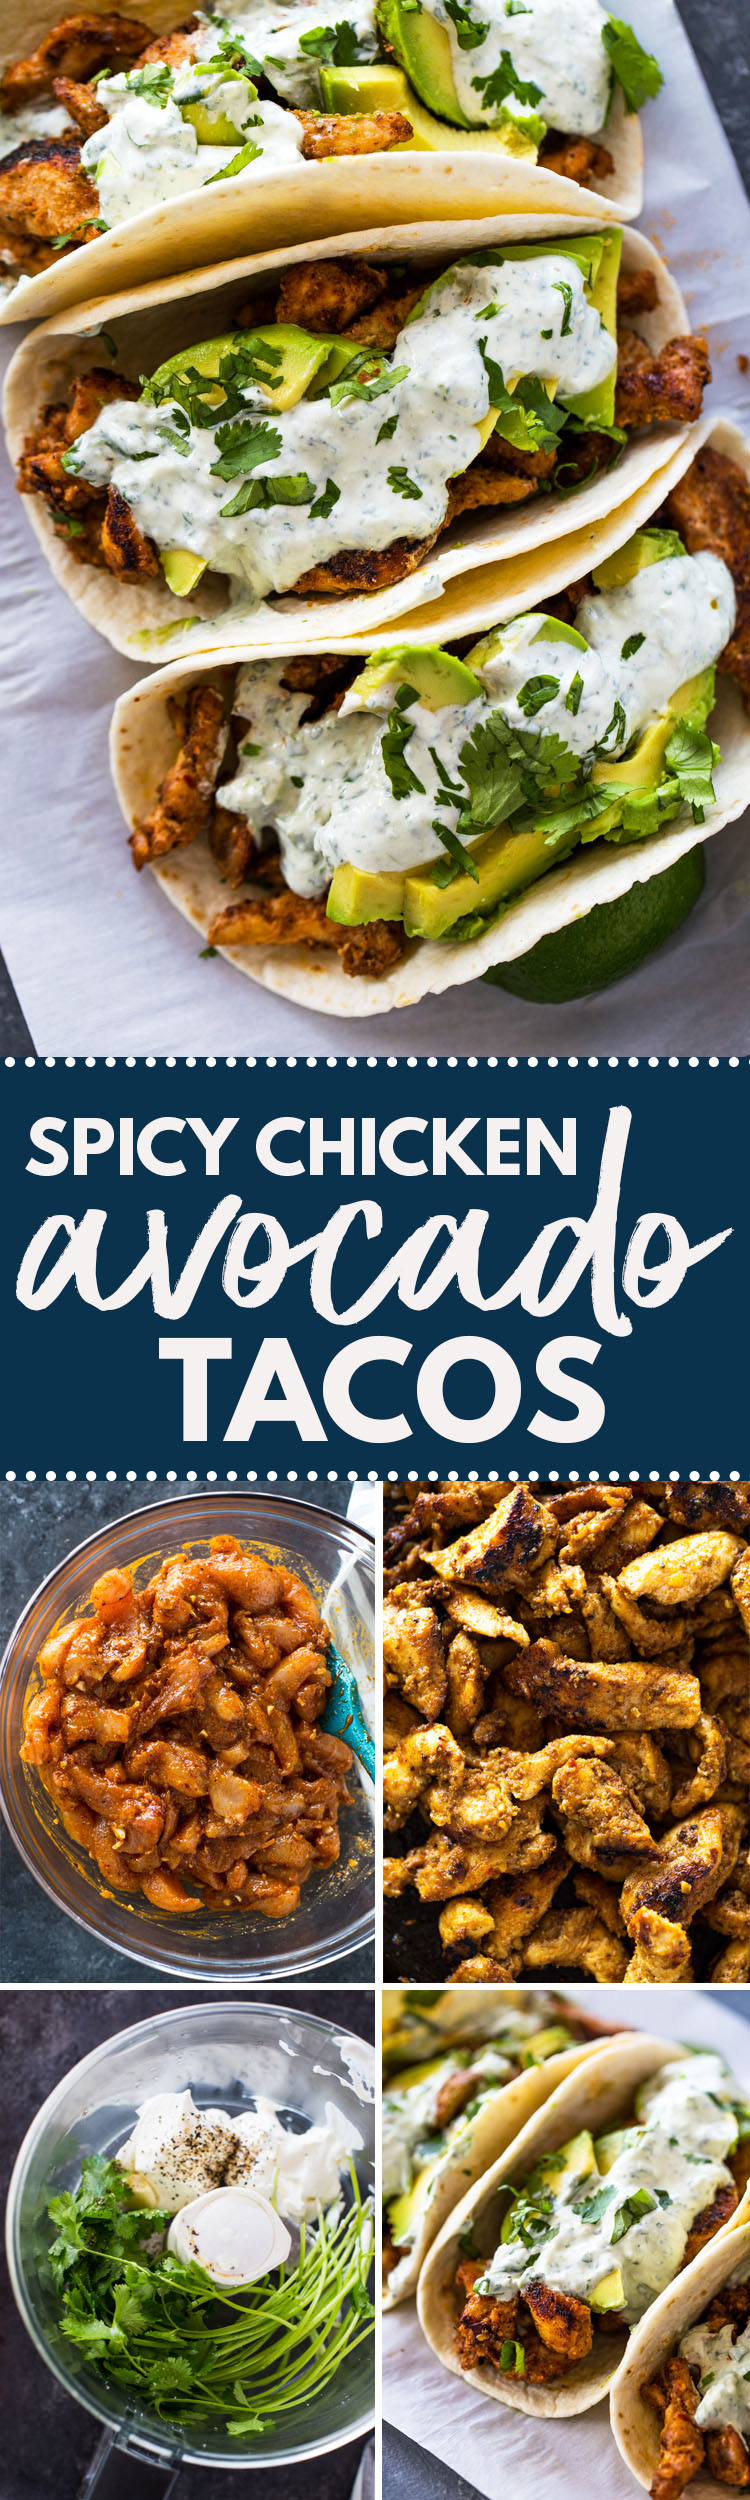 Chicken and Avocado Tacos with Creamy Cilantro Sauce